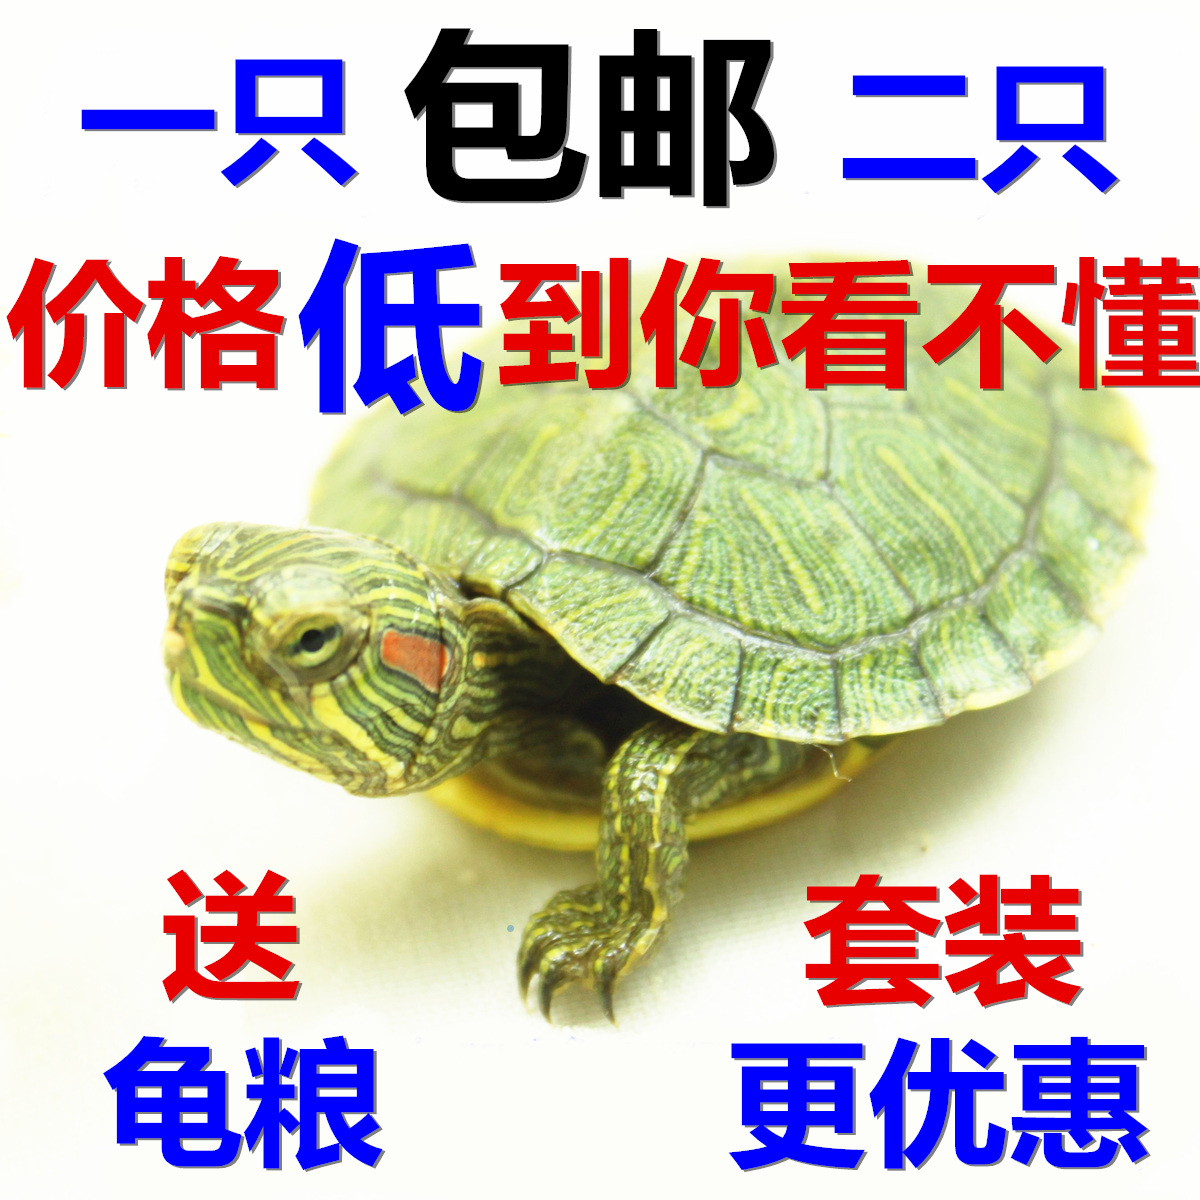 2016宠物小巴西龟苗 活体水龟活体乌龟 小巴西彩龟(免费包装)全品